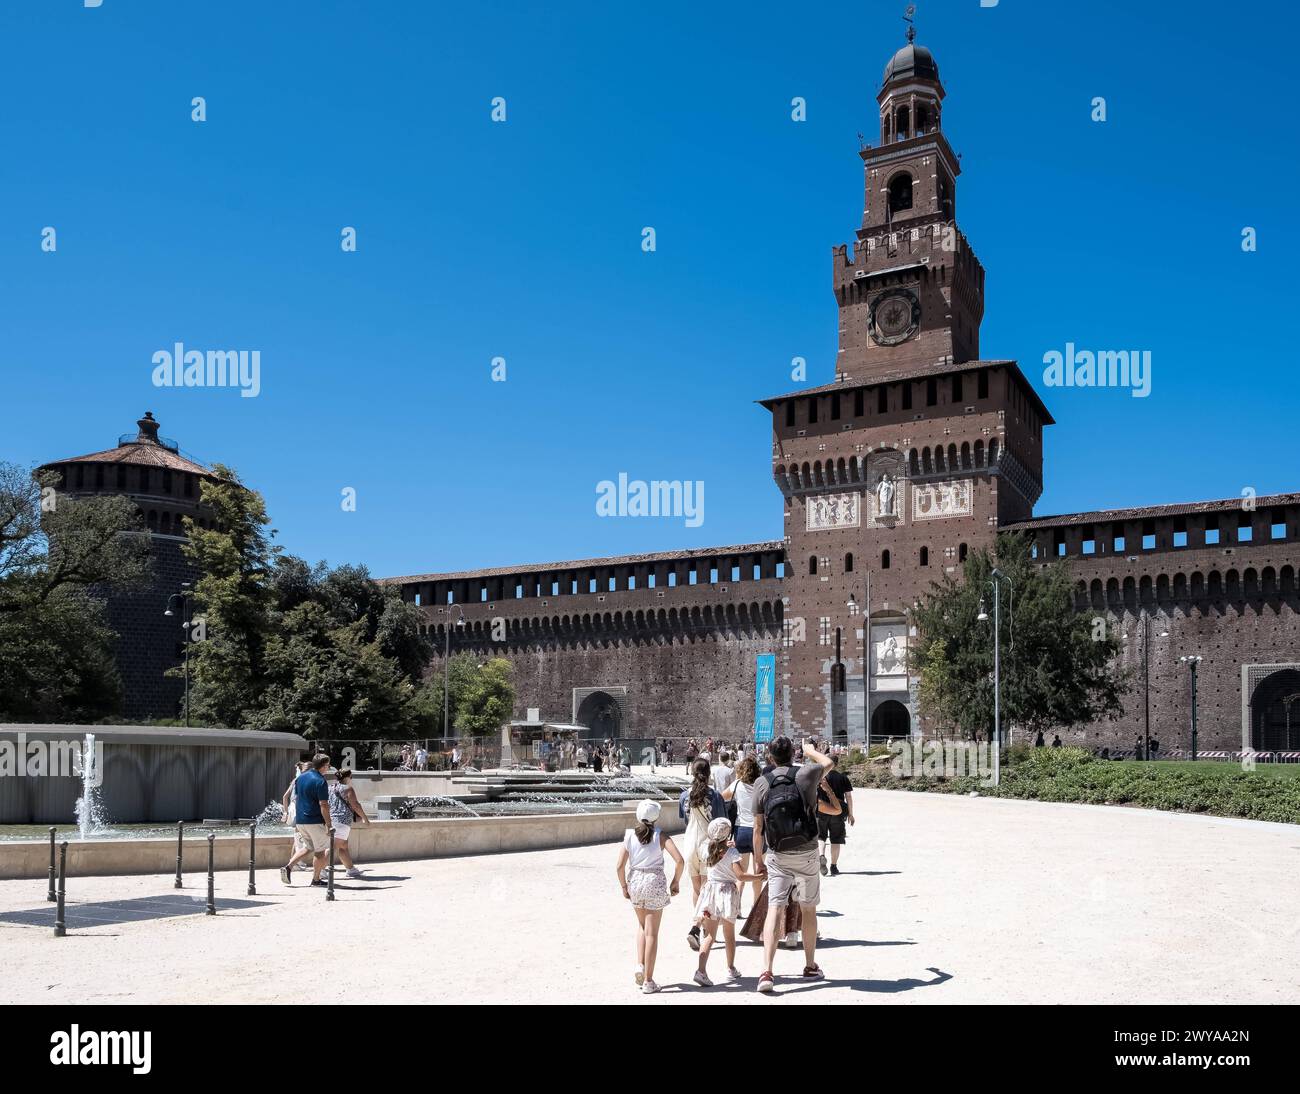 Vue du château des Sforza, fortification médiévale datant du XVe siècle, abritant aujourd'hui des musées et des collections d'art, Milan, Banque D'Images